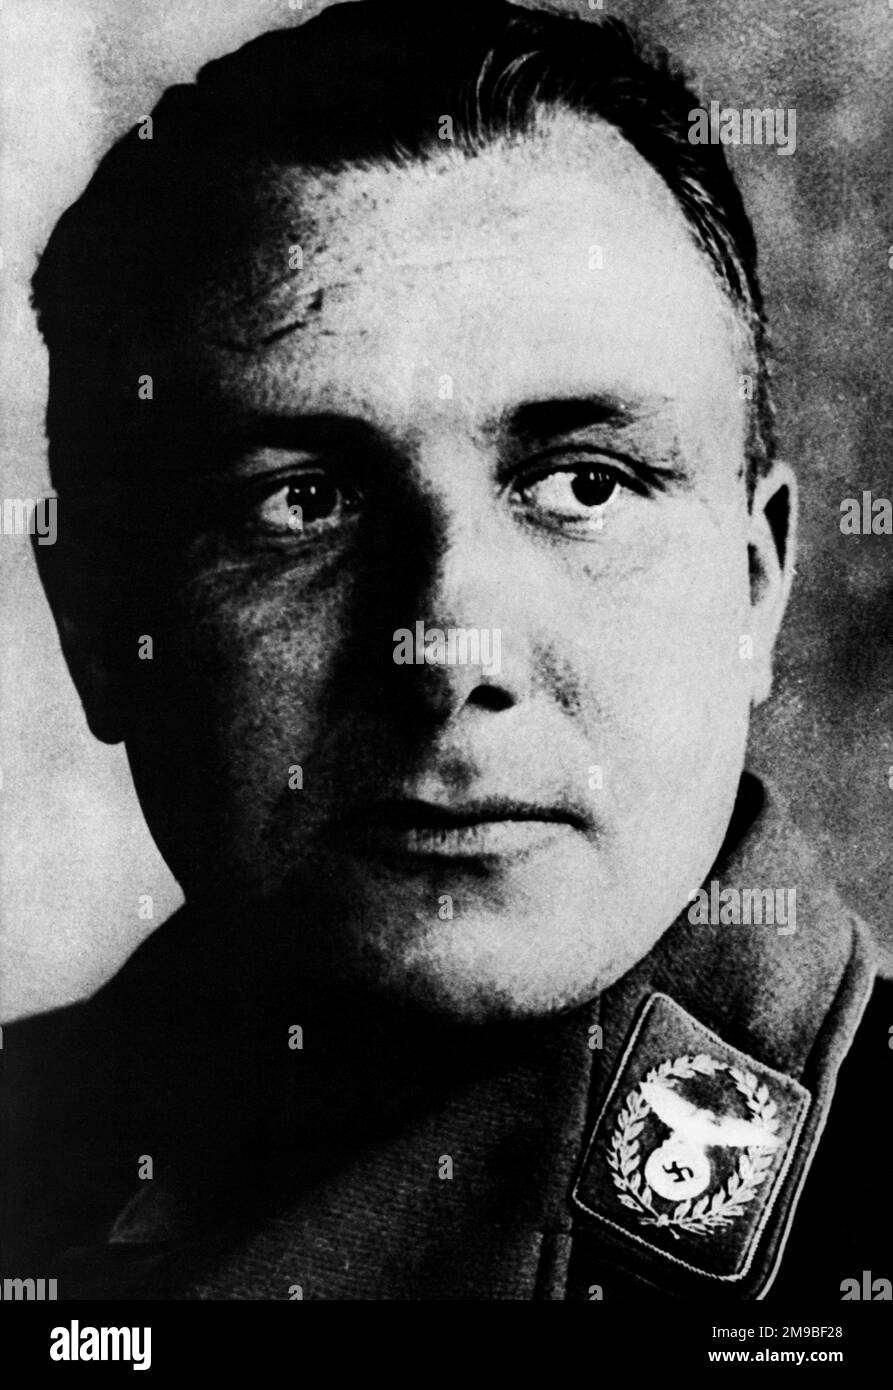 1940 ca, GERMANIA : il nazista tedesco MARTIN BORMAN ( 1900 - 1945 ), uno dei leader del terzo Reich con Adolf Hitler . Fotografo sconosciuto . - SECONDA GUERRA MONDIALE - NAZISTA - NAZISTA - NAZISTA - NAZISTA - NAZISMO - SECONDA GUERRA MONDIALE - WW2 - SECONDA GUERRA MONDIALE - POLITICA - POLITICO - SVASTICA - CRIMINALE - CRIMINALE - CRIMINALE -- ARCHIVIO GBB Foto Stock